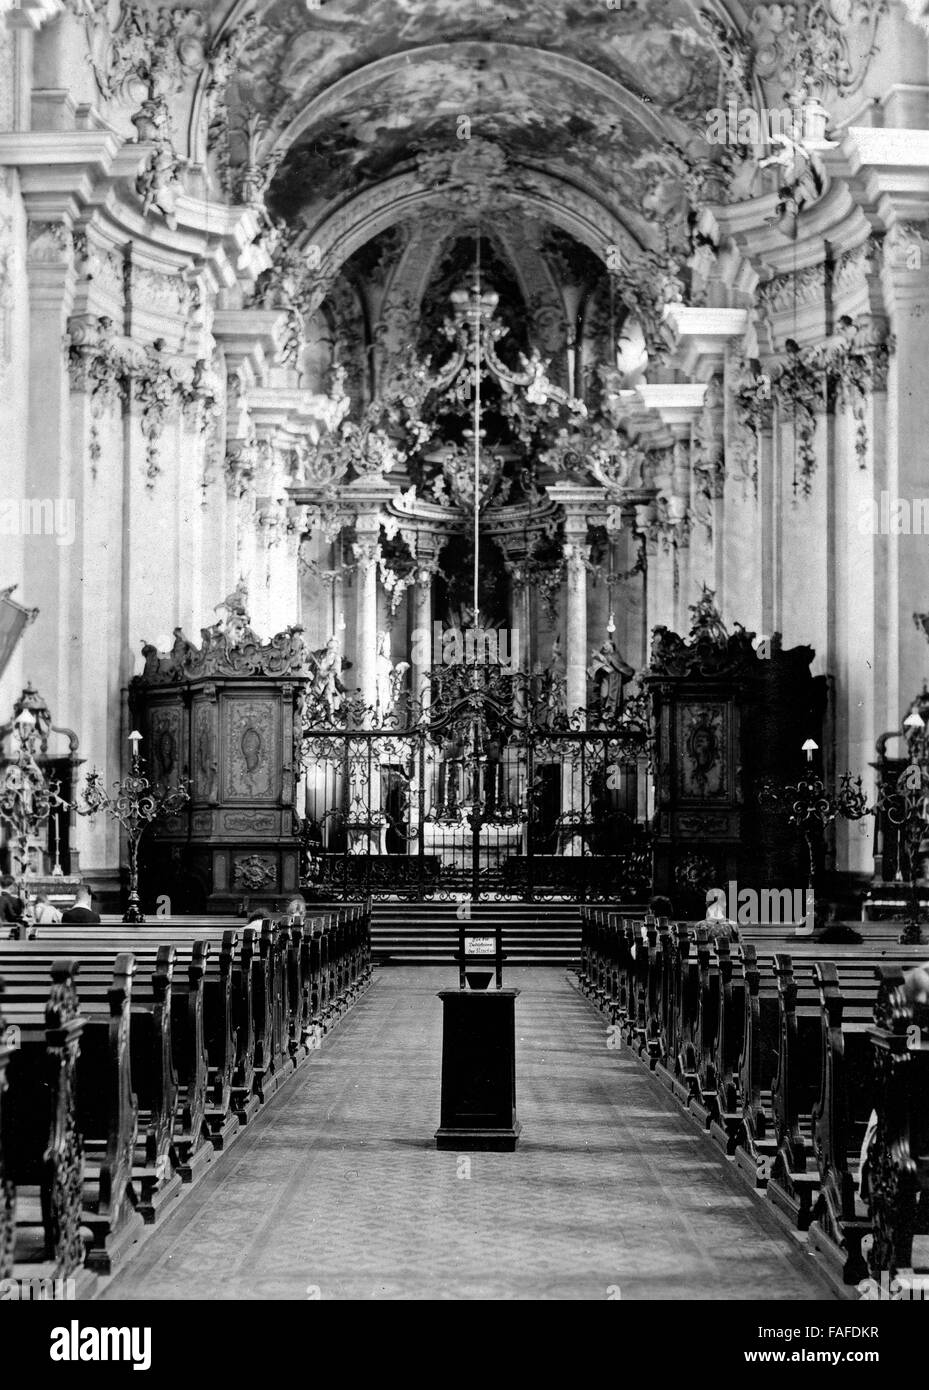 Im Inneren der Barockkirche St. Paulin a Treviri, Deutschland 1930er Jahre. All'interno di una chiesa barocca St. Paulin a Treviri, Germania 1930s. Foto Stock